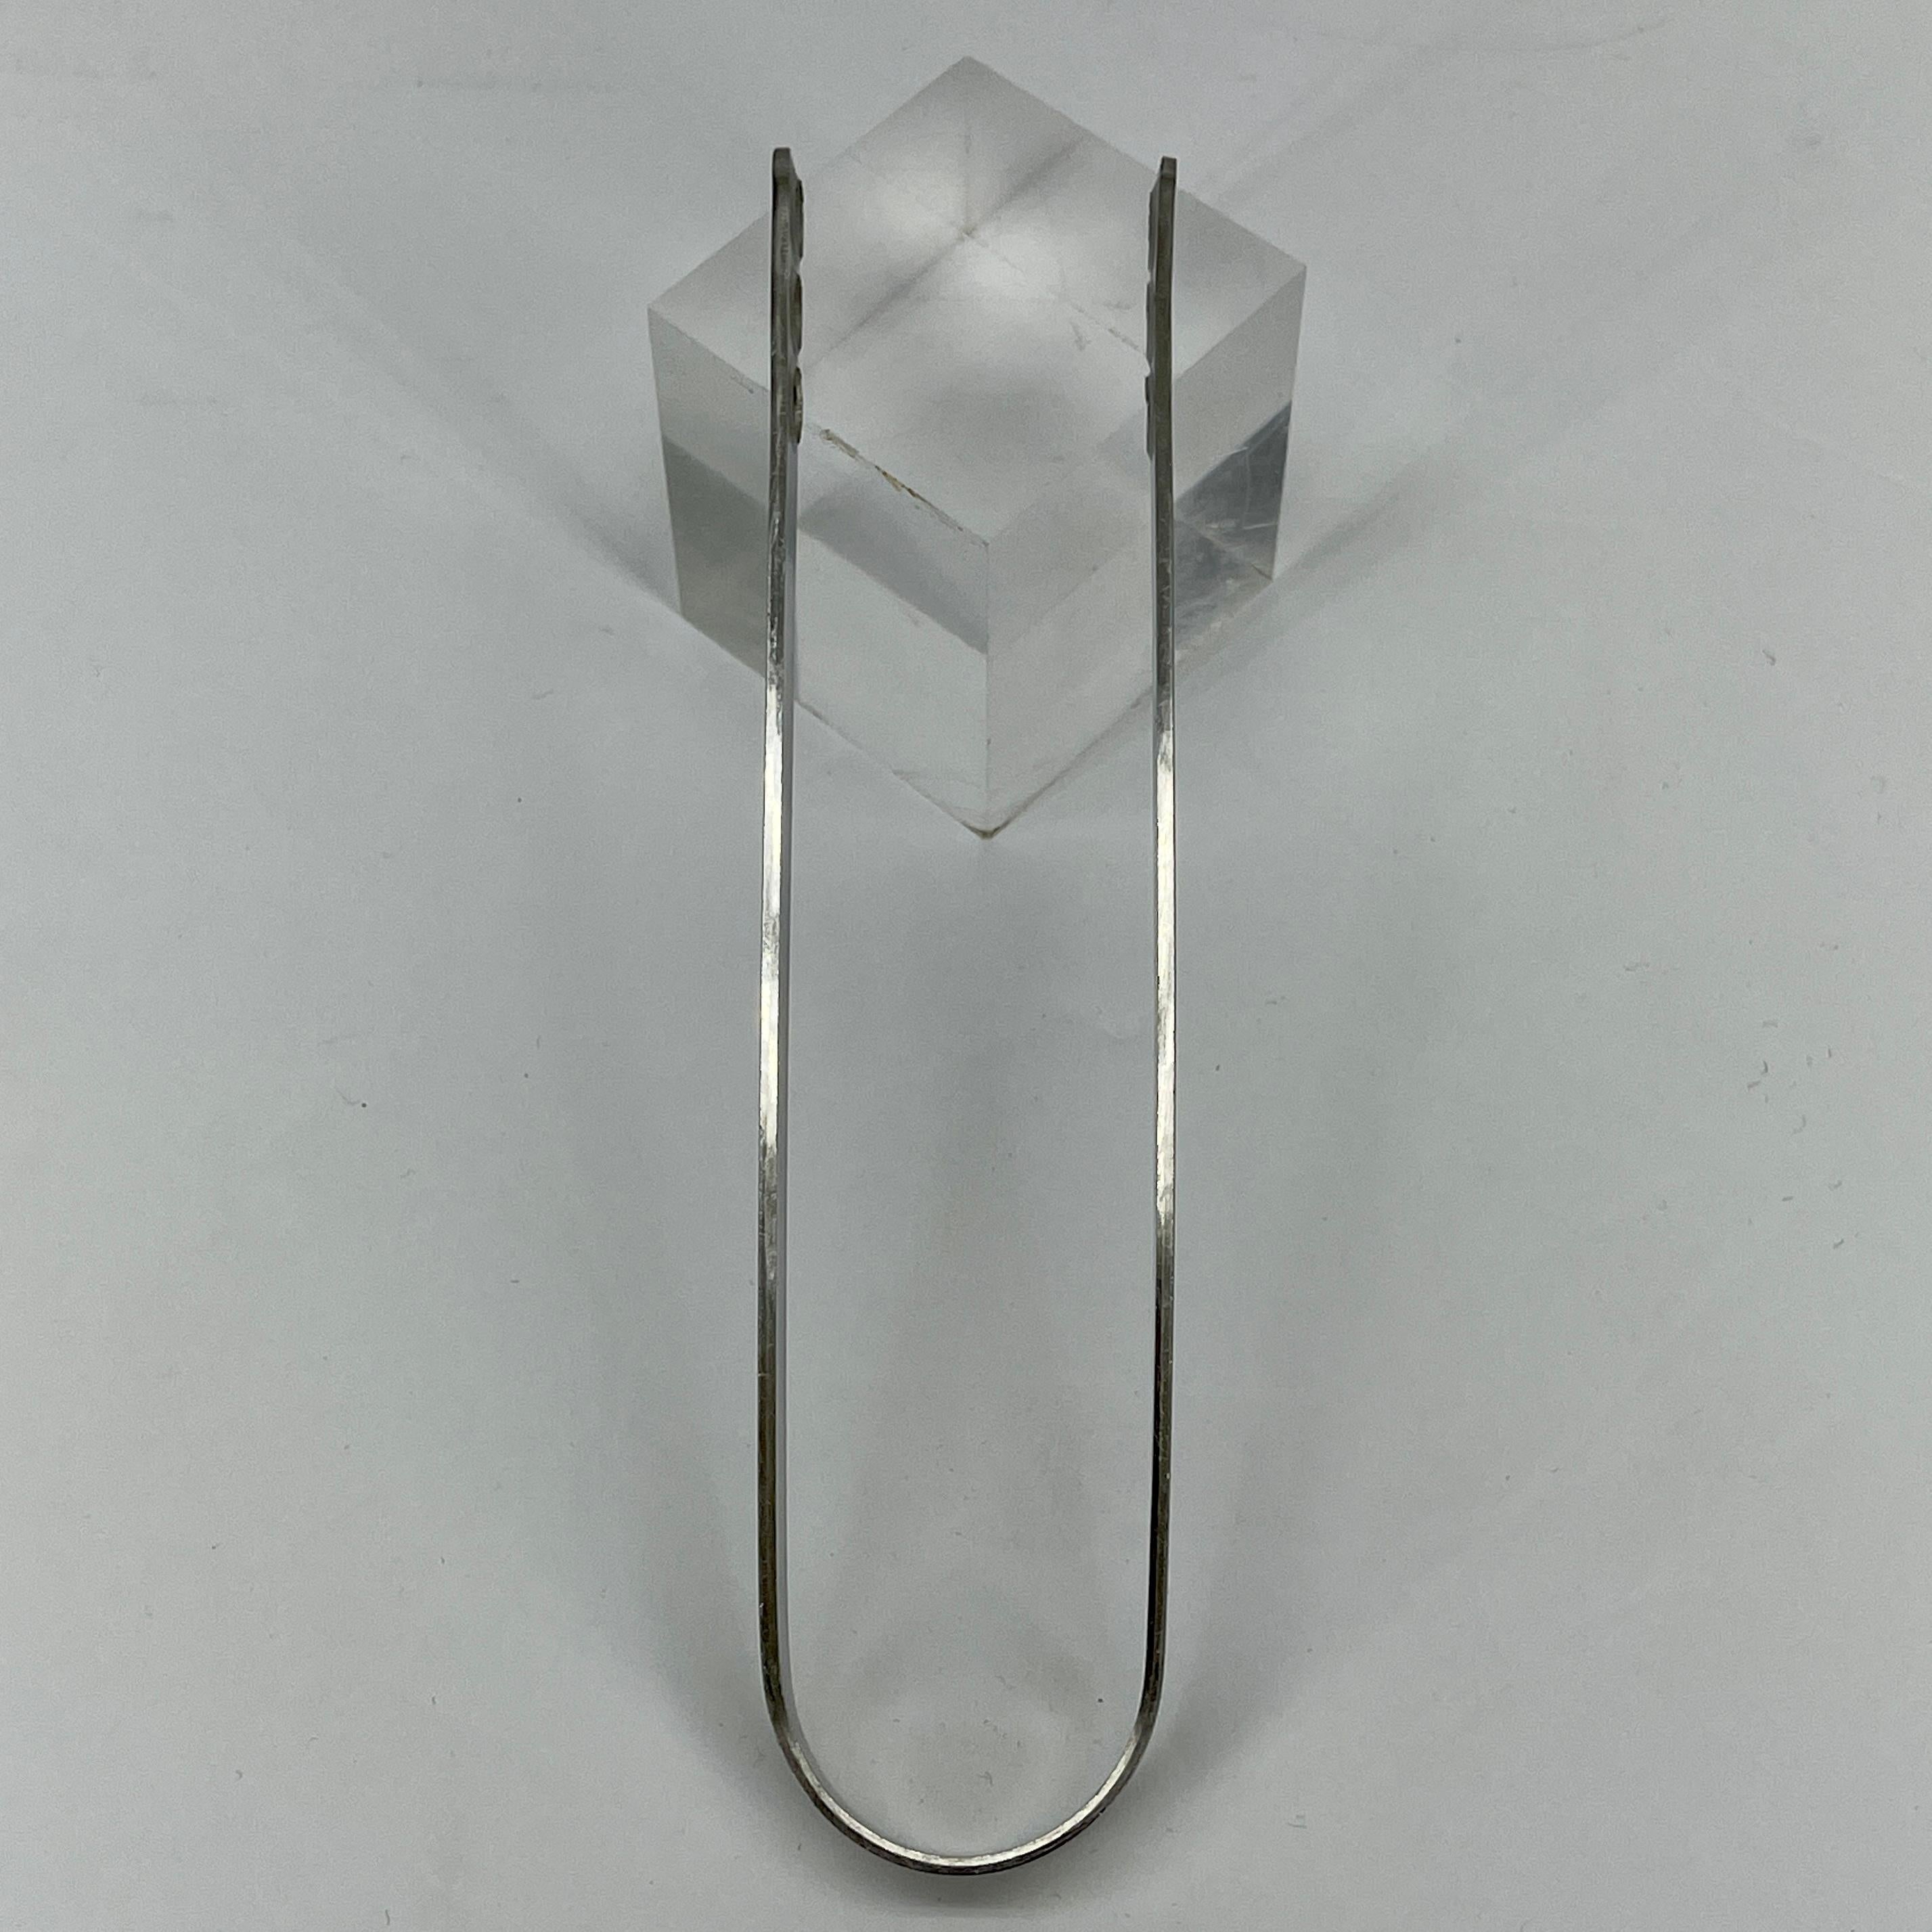 Arne Jacobsen for Stelton Stainless Steel Ice Tong, Danish Mid-Century Modern 3